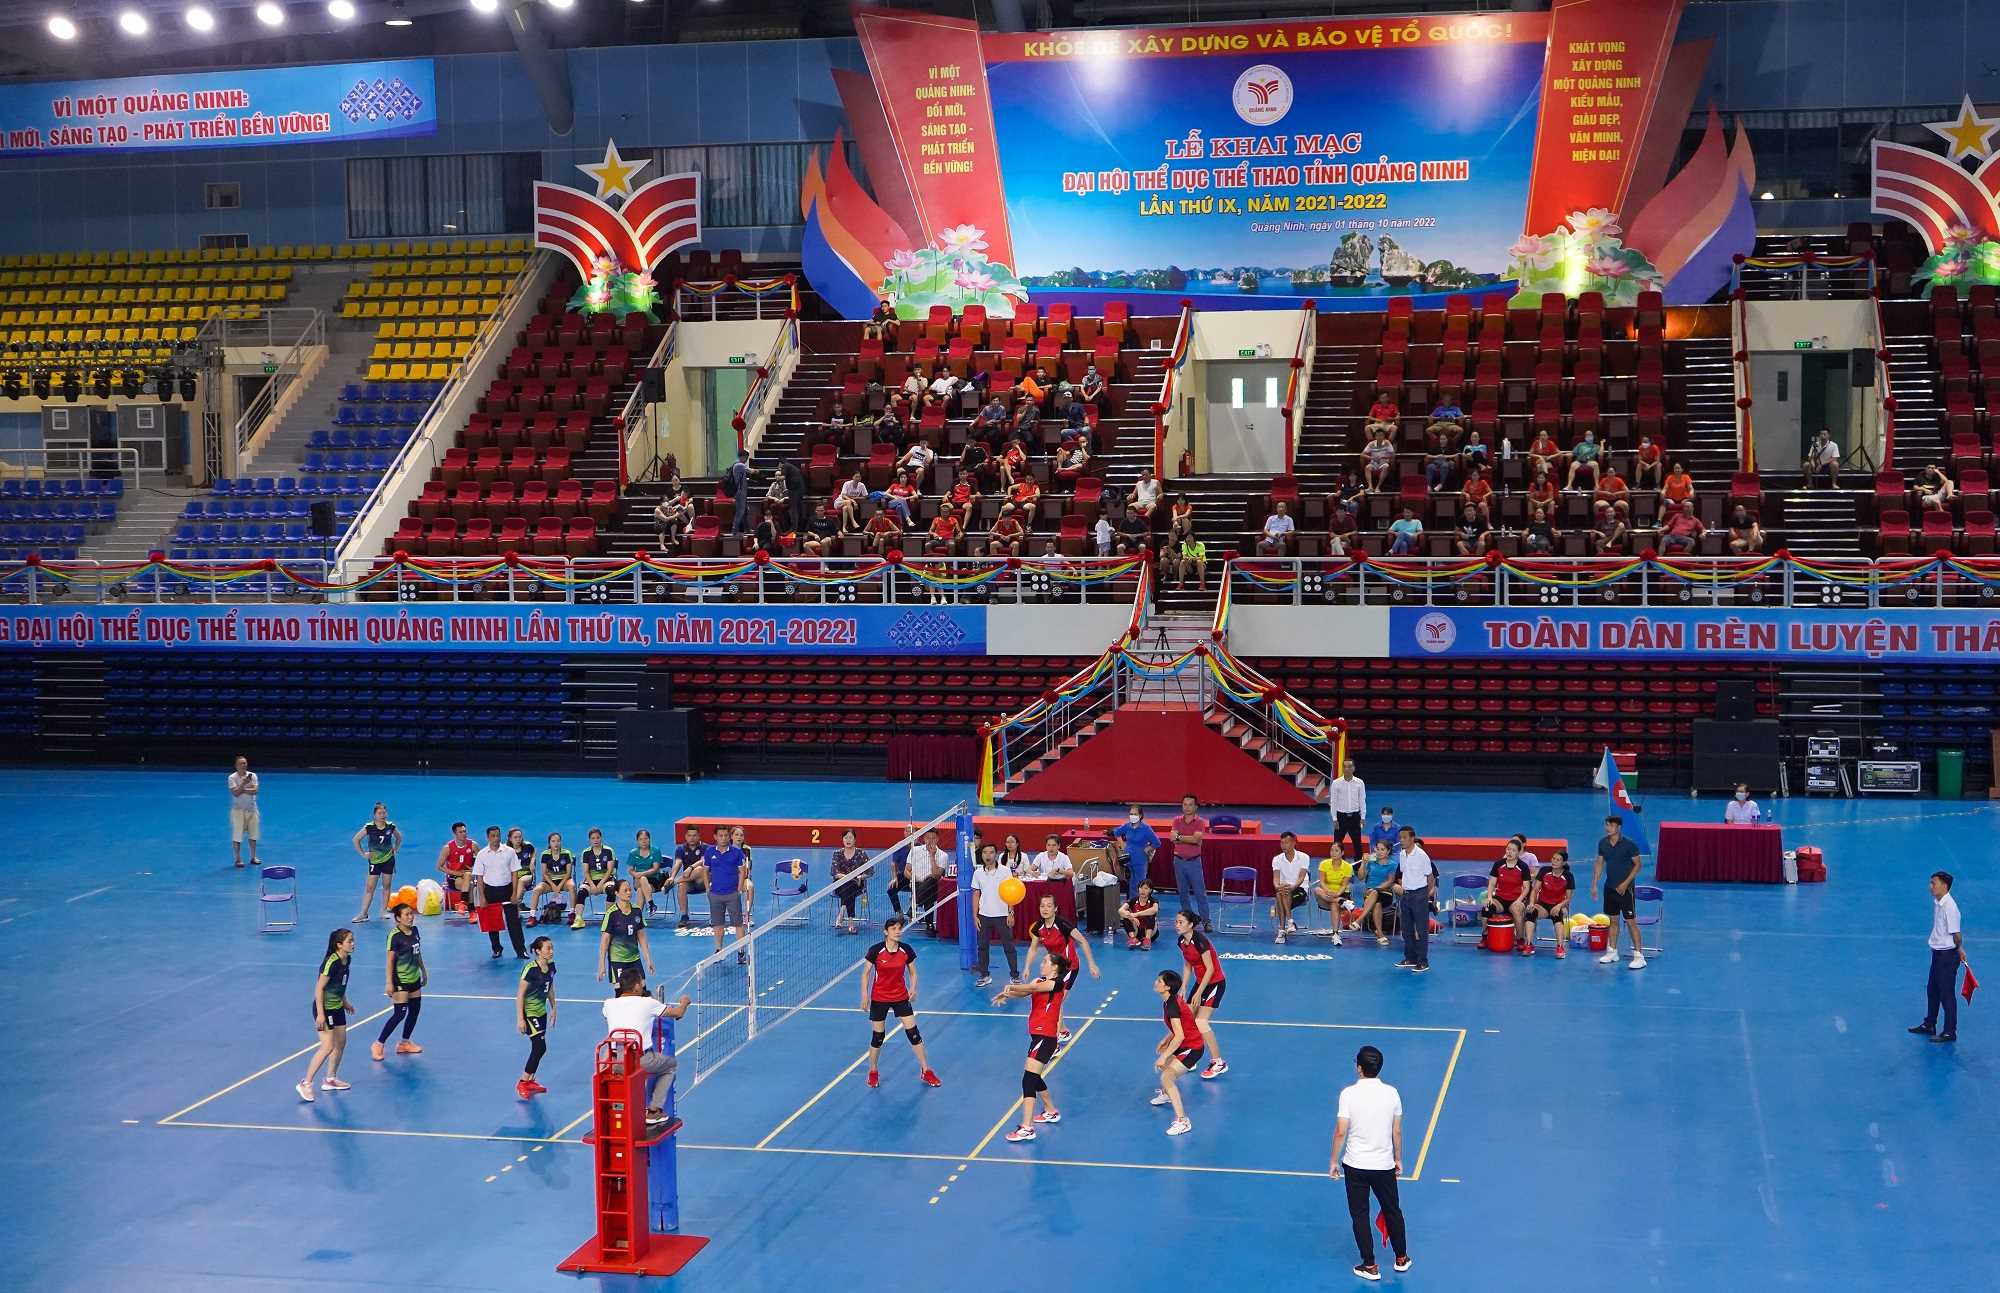 Thể dục thể thao Quảng Ninh vững bước trên chặng đường mới - Ảnh 4.